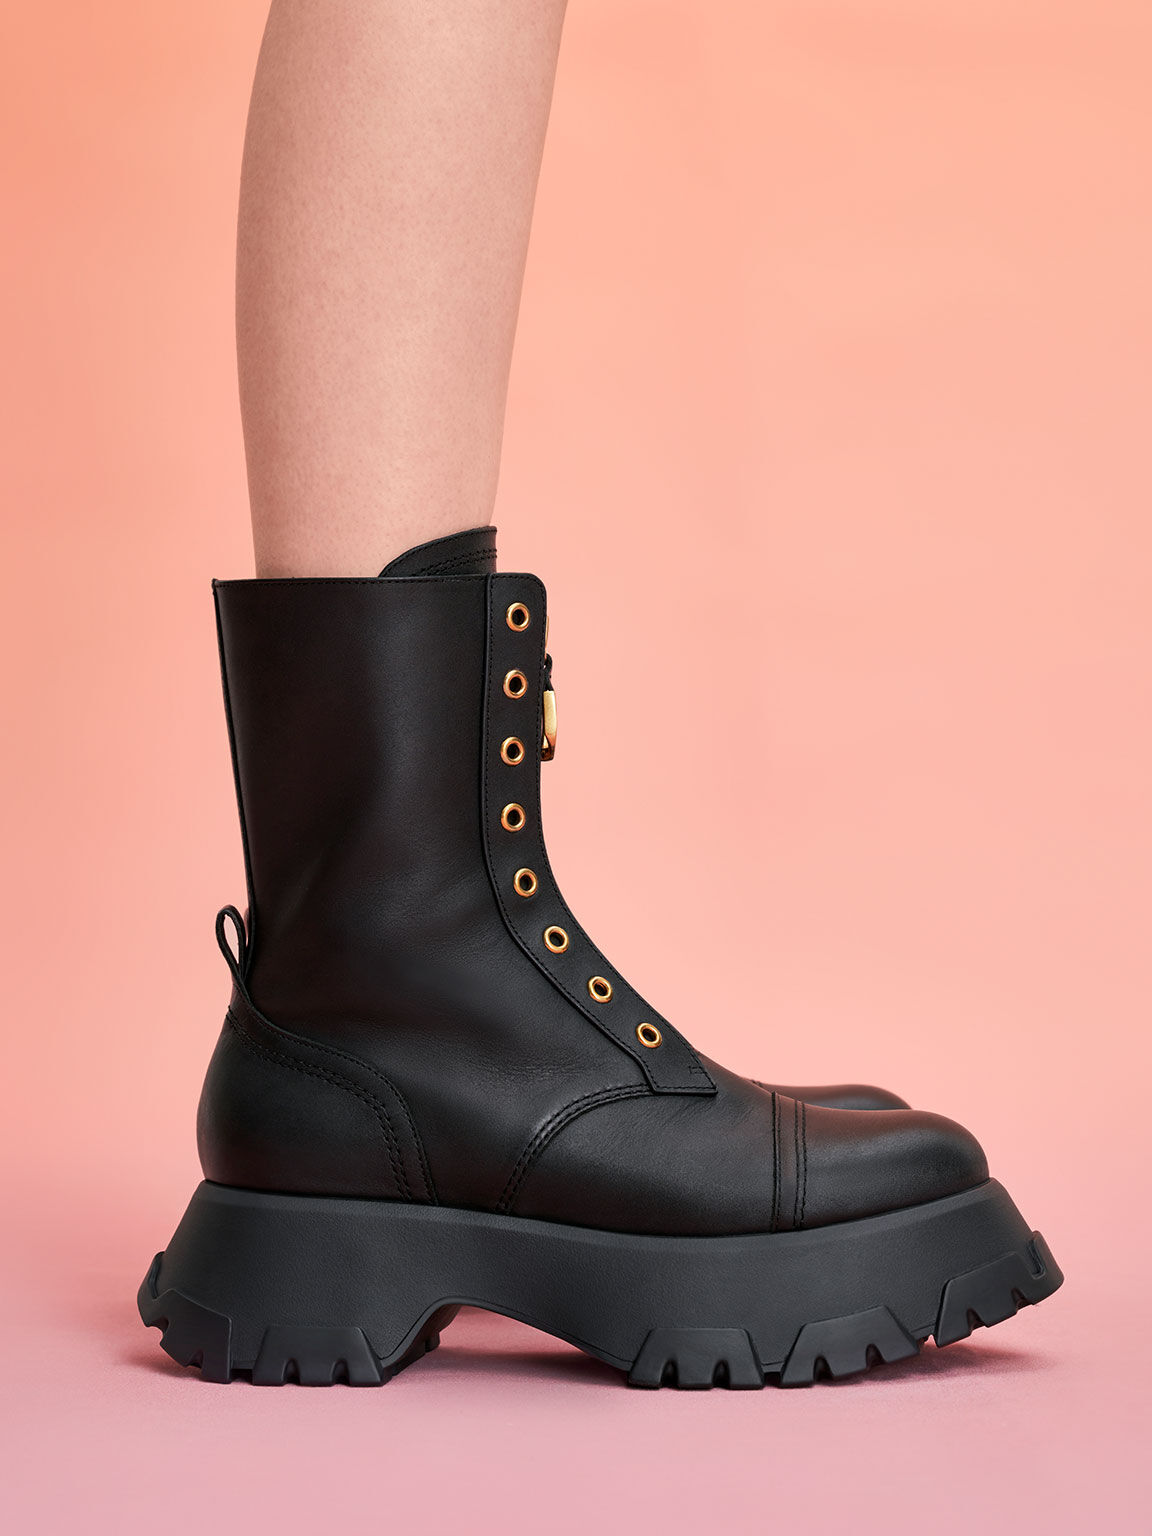 Mardela Front Zip Ankle Boots, Black, hi-res